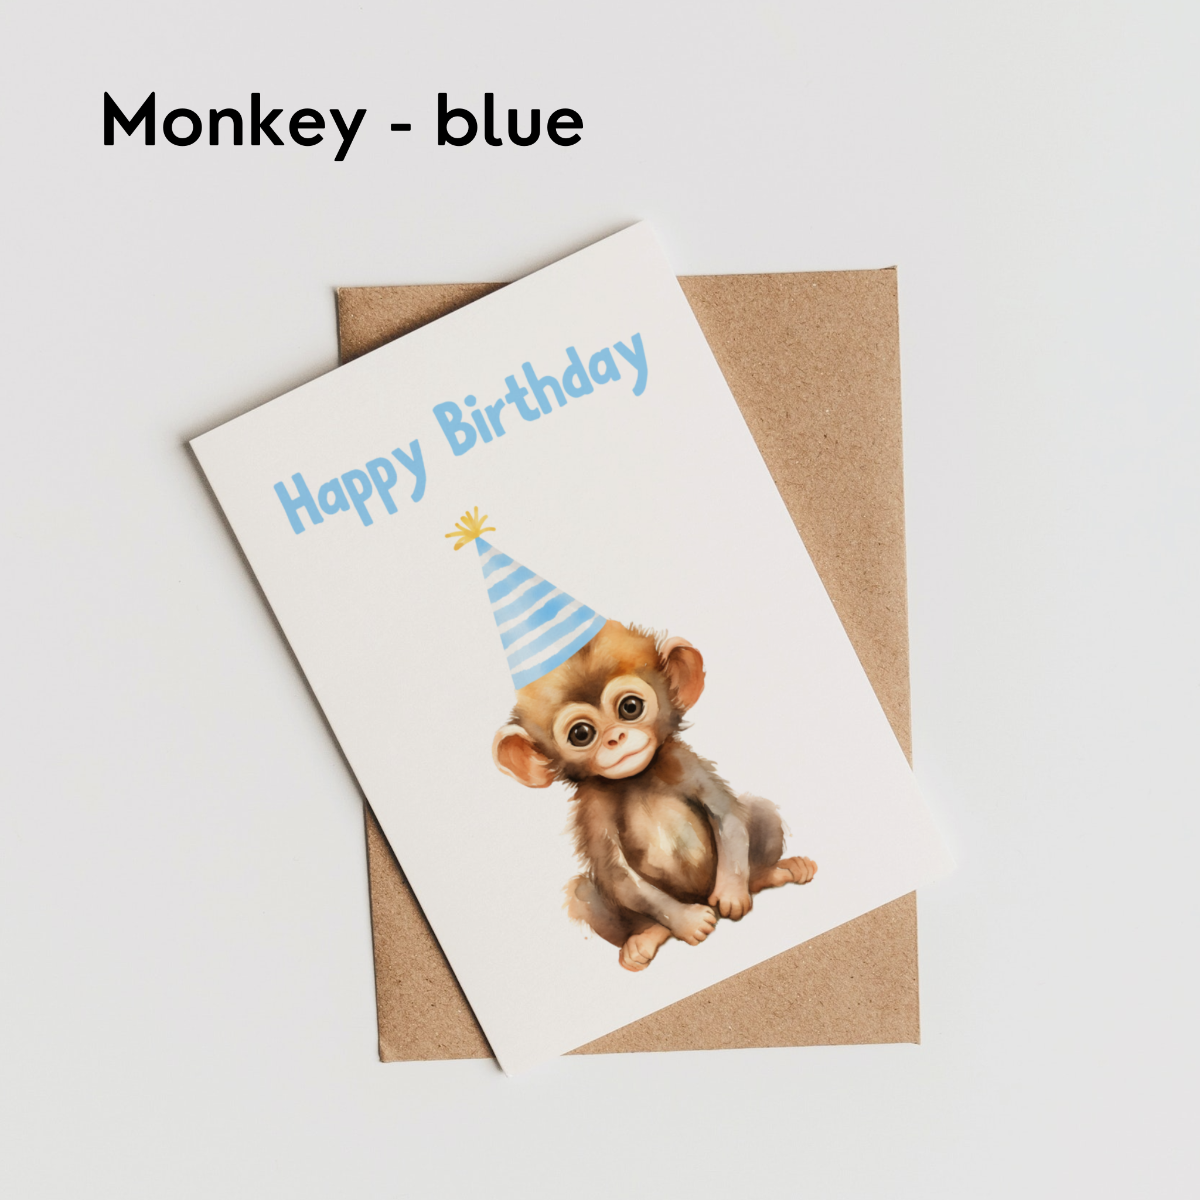 Monkey birthday card